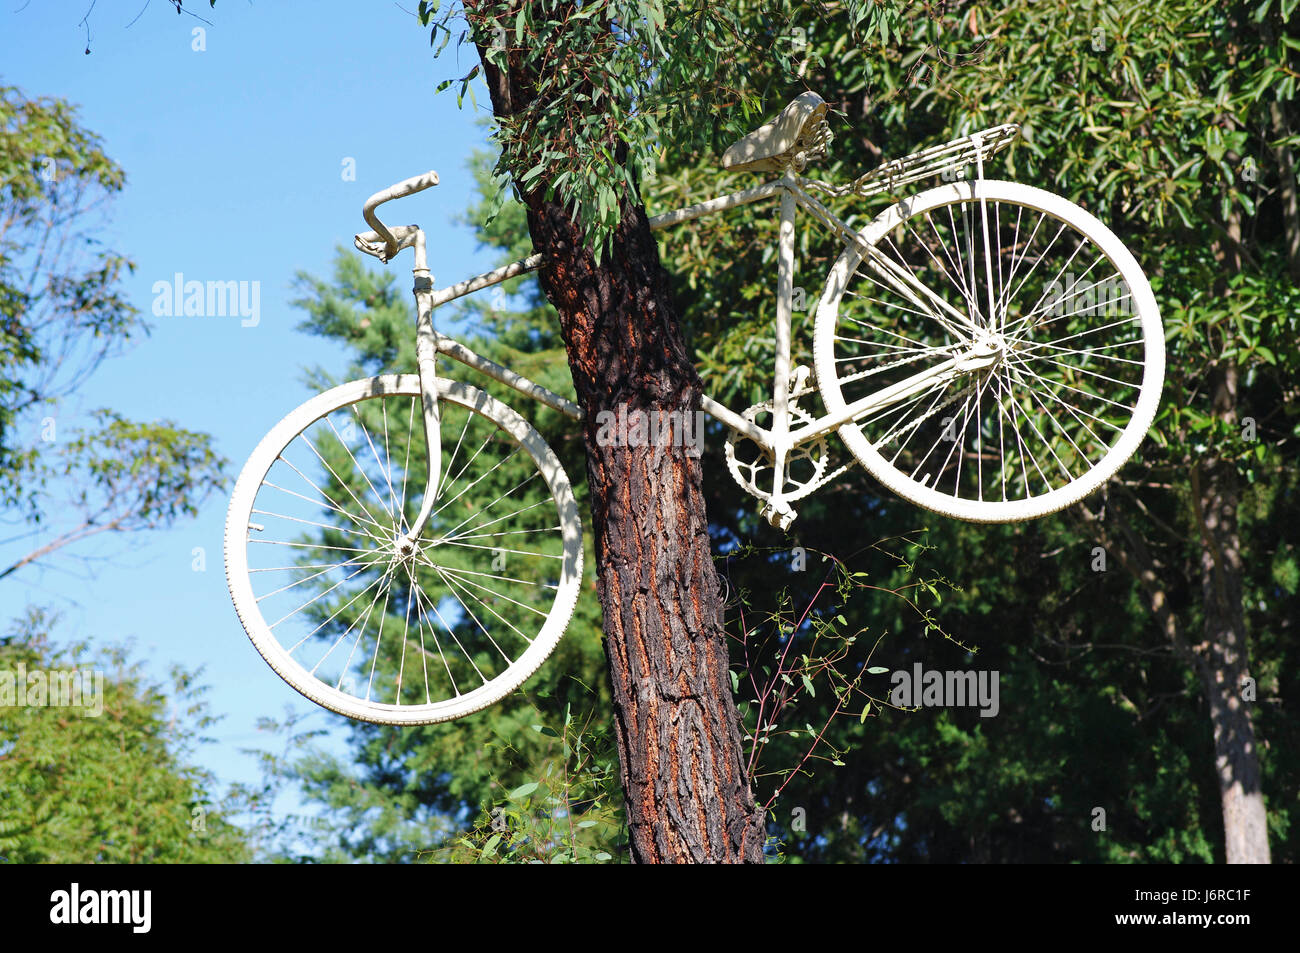 Accident de vélo arbre drôle cycle enthousiasme jouissance amusement joie gag Banque D'Images